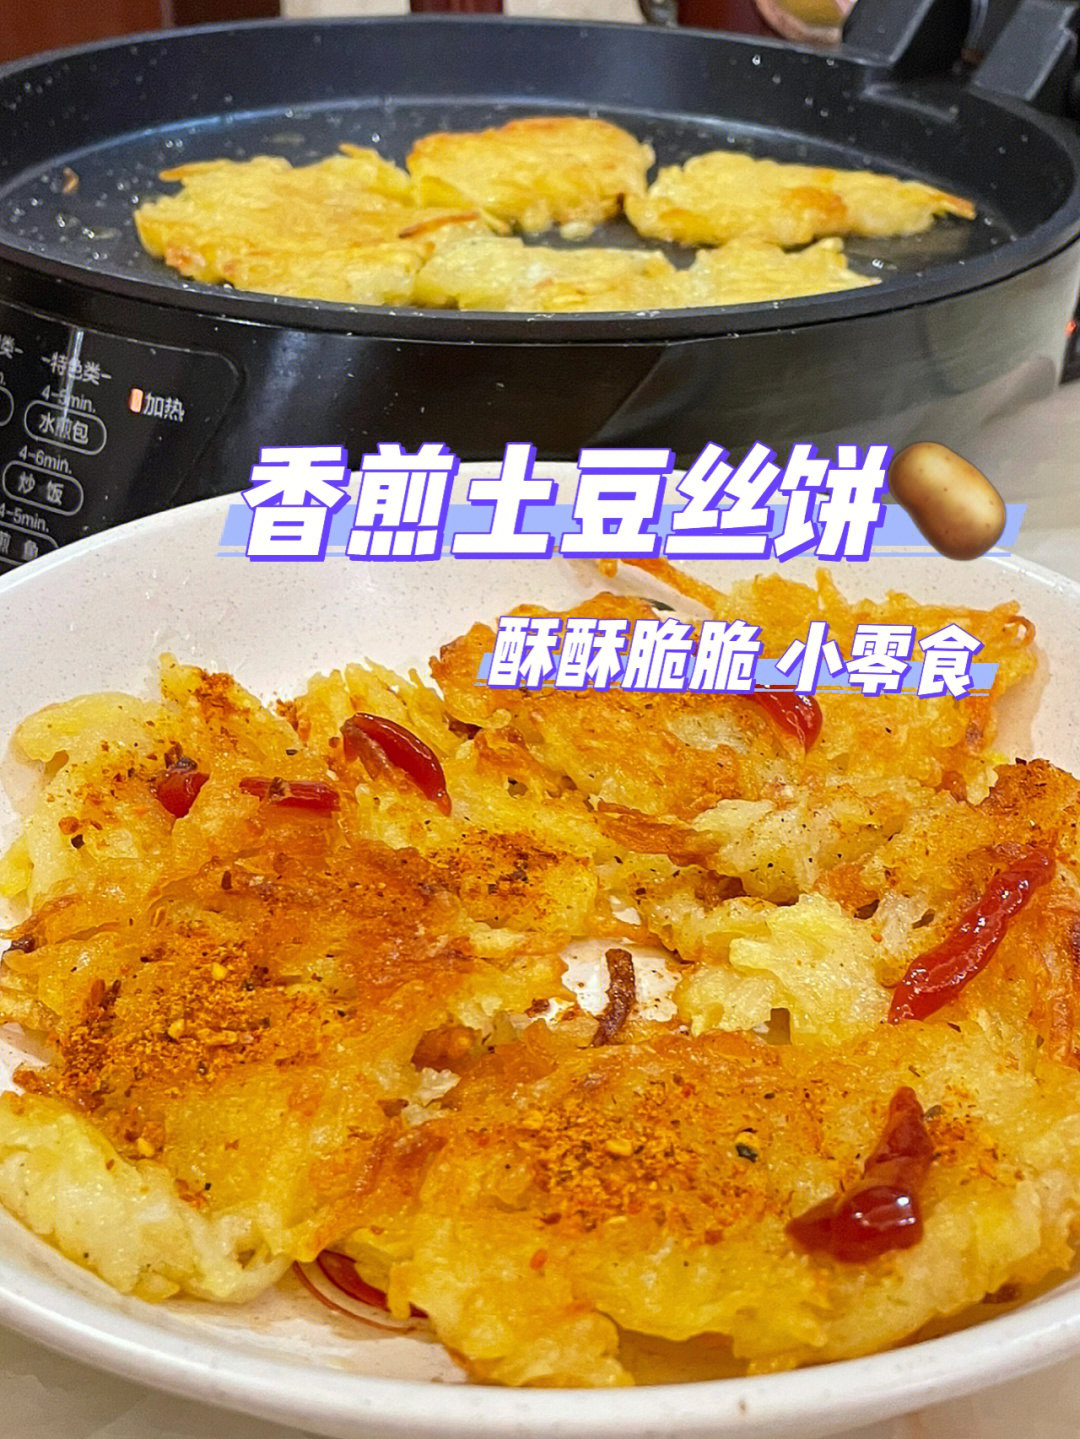 简易食堂香煎土豆丝饼0801酥酥脆脆小零食